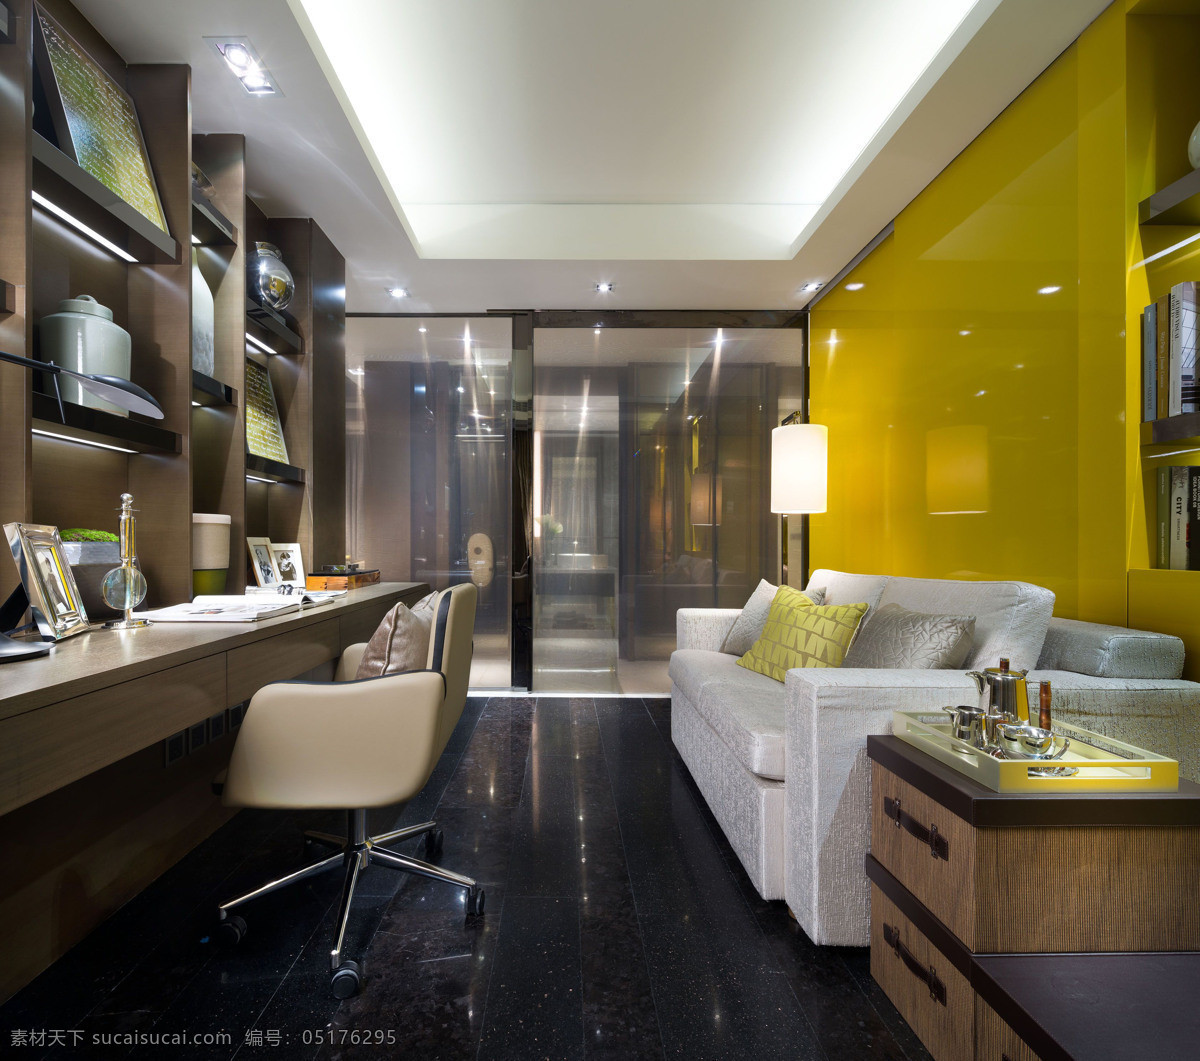 现代 书房 黄色 沙发 背景 效果图 白色沙发 木质书架 室内效果图 现代简约